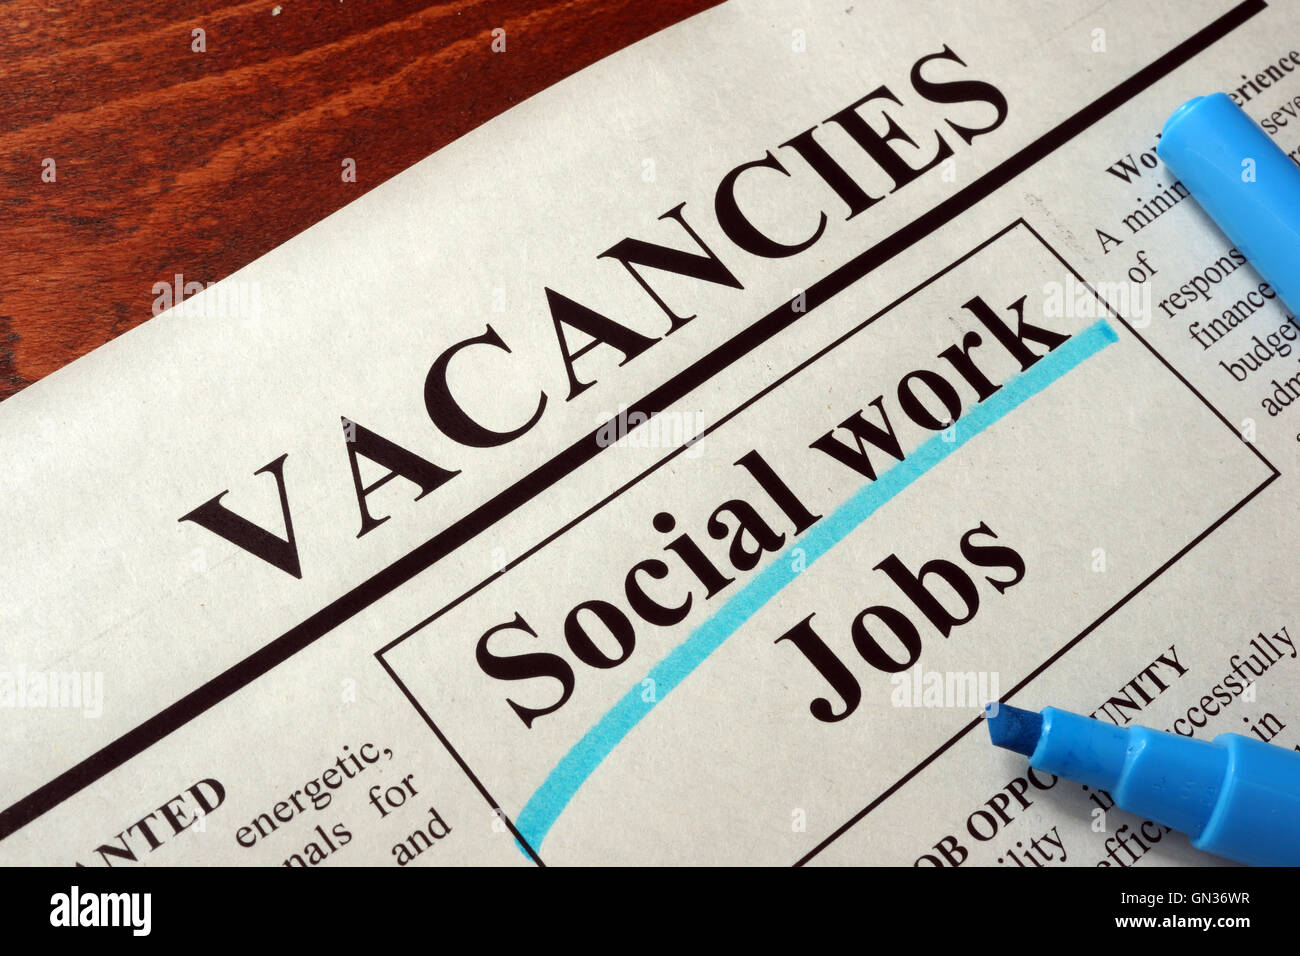 Zeitung mit Anzeigen Sozialarbeit Jobs Stellenausschreibung. Beruf-Konzept. Stockfoto